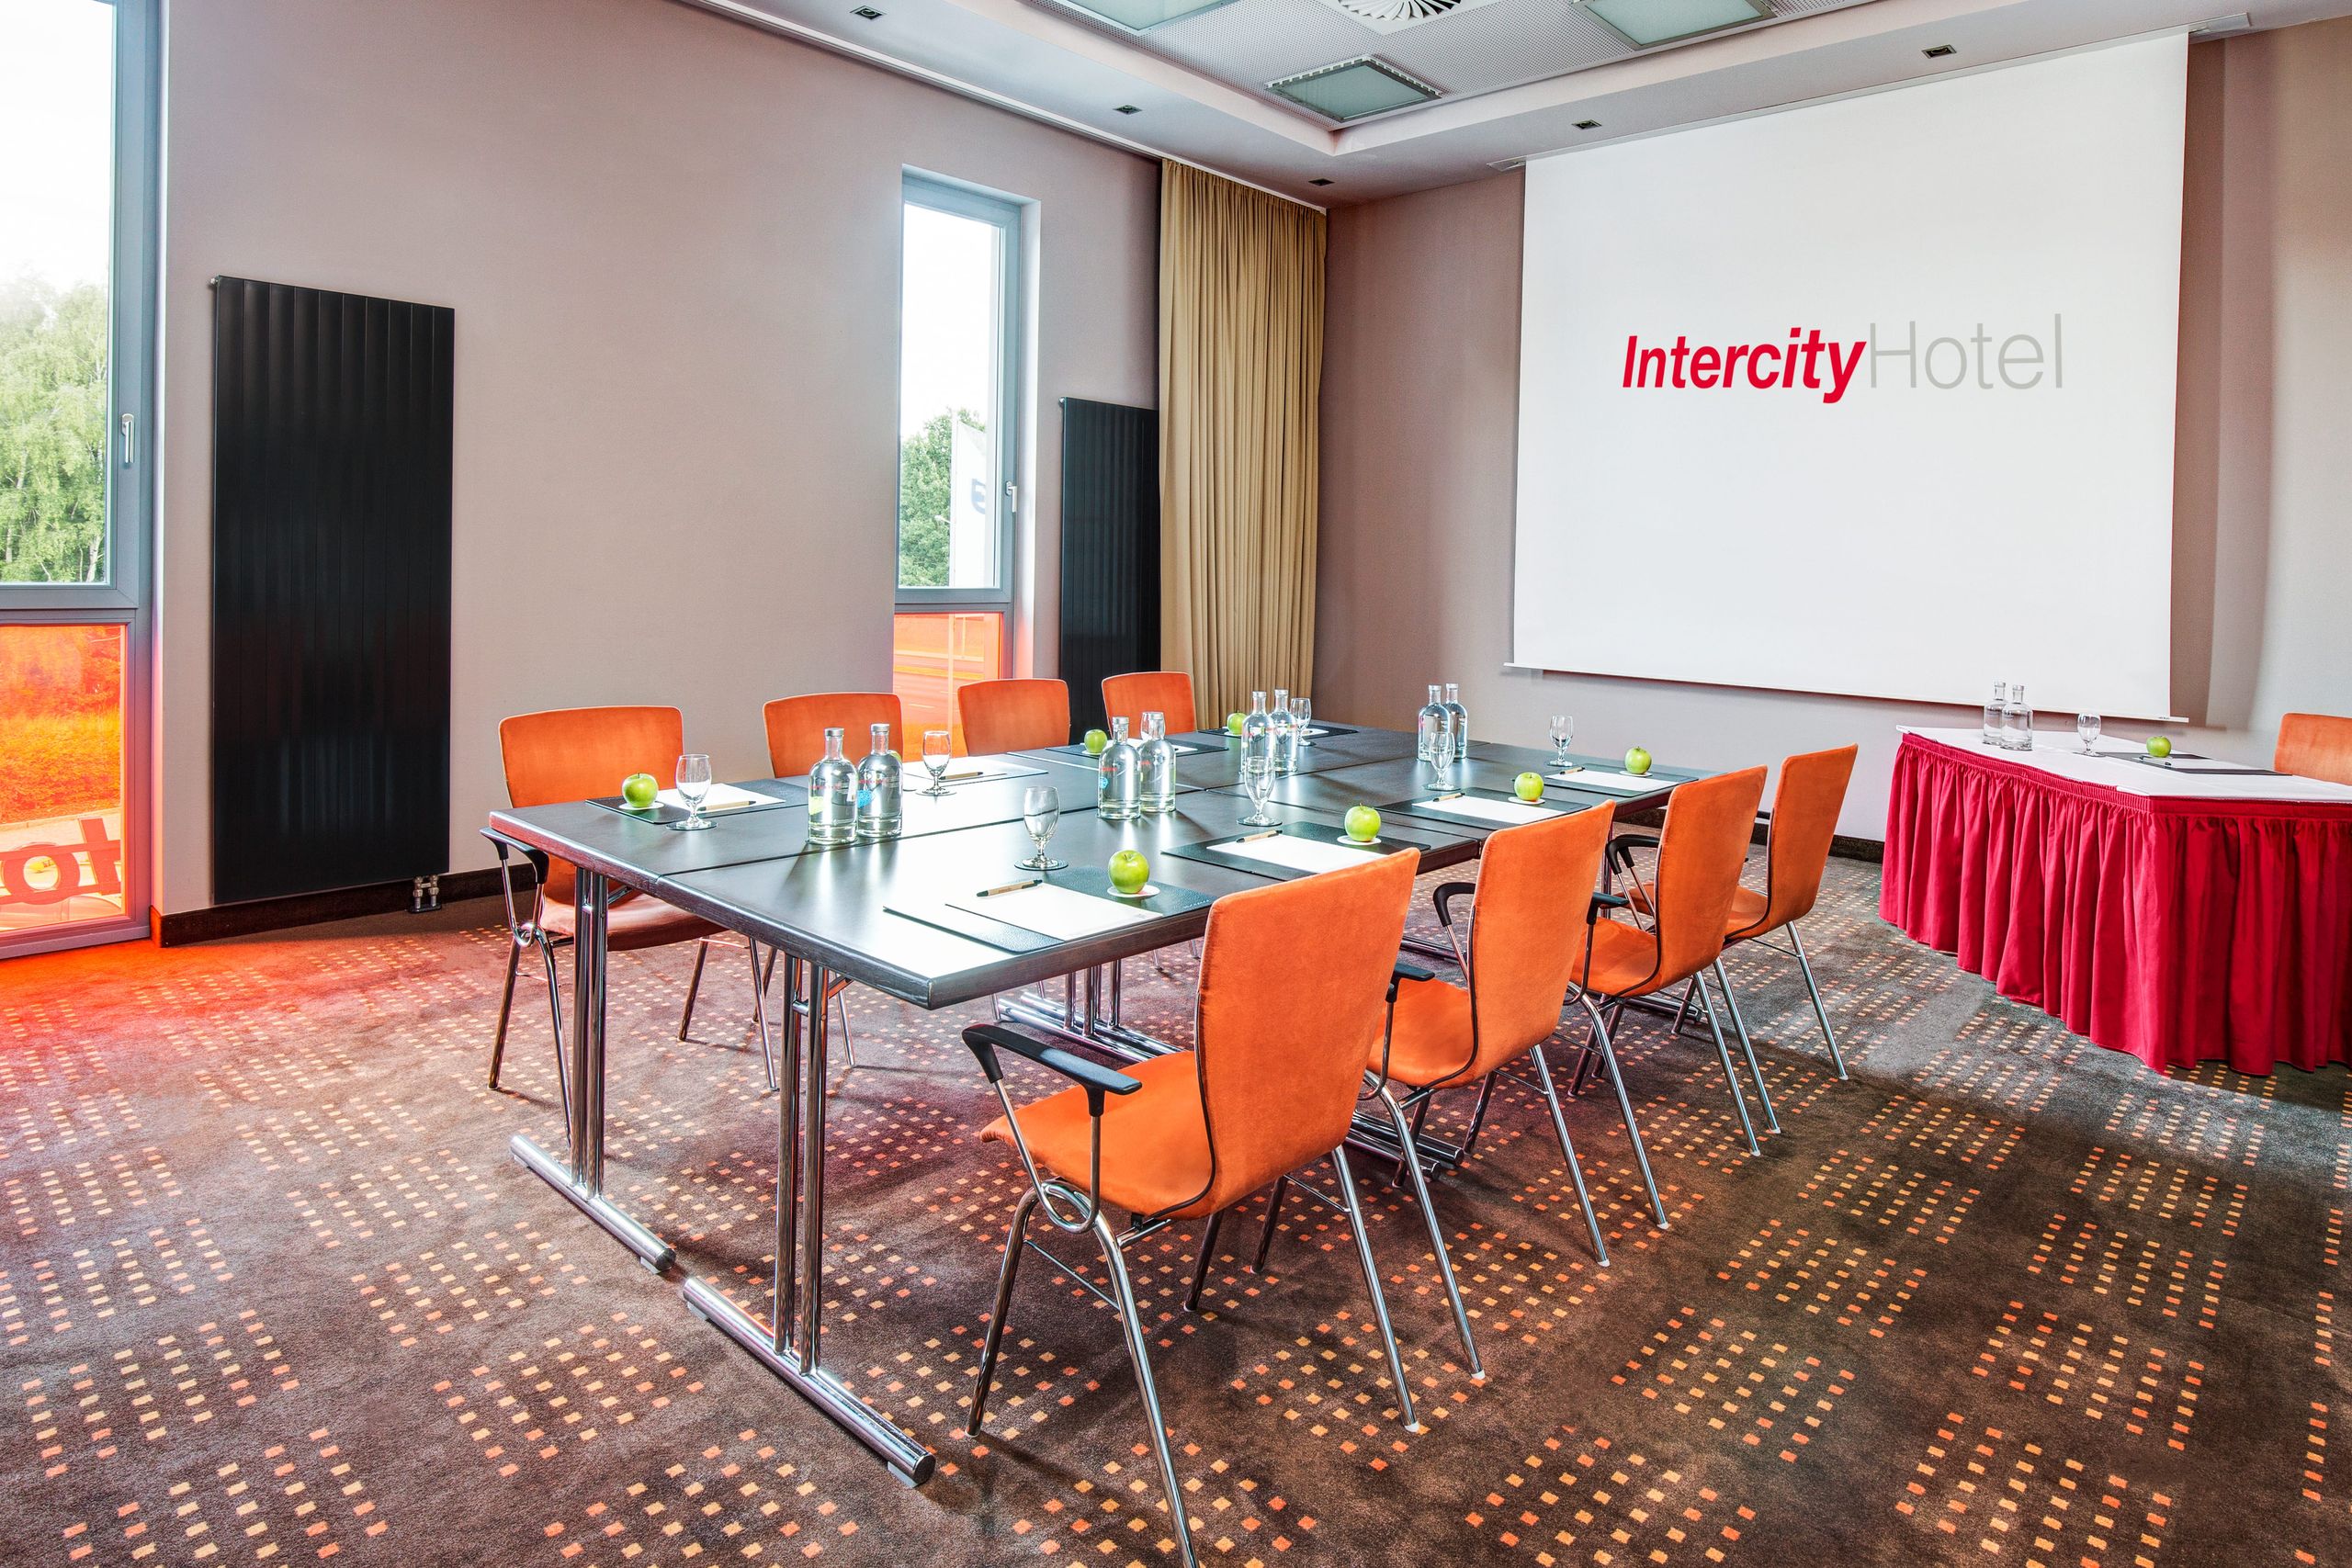 IntercityHotel Berlin-Brandenburg Airport - Meetings & Events - Salles de conférence